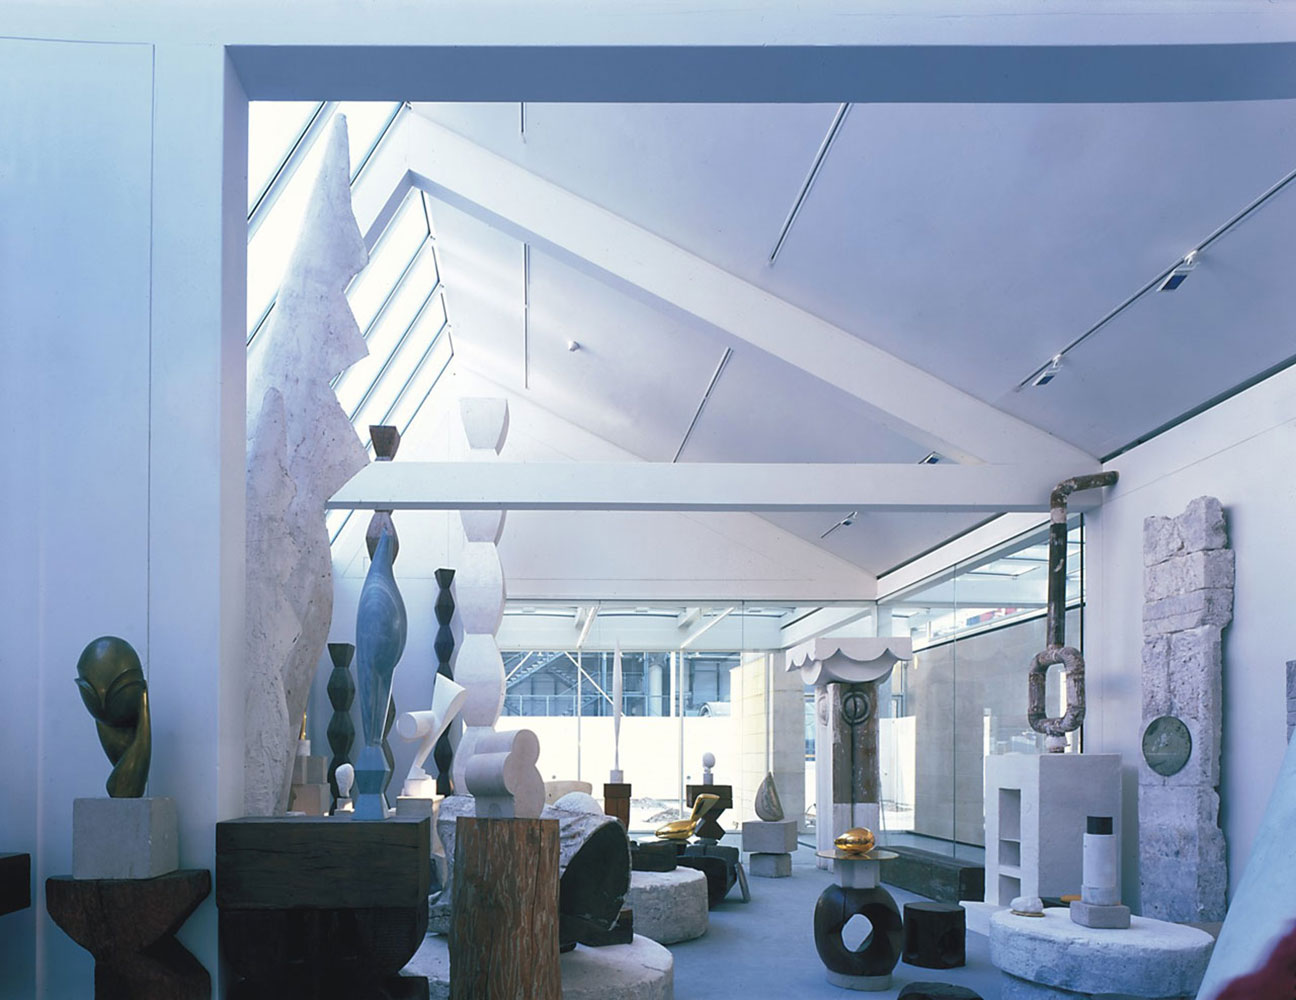 Atelier Brancusi at the Pompidou Centre